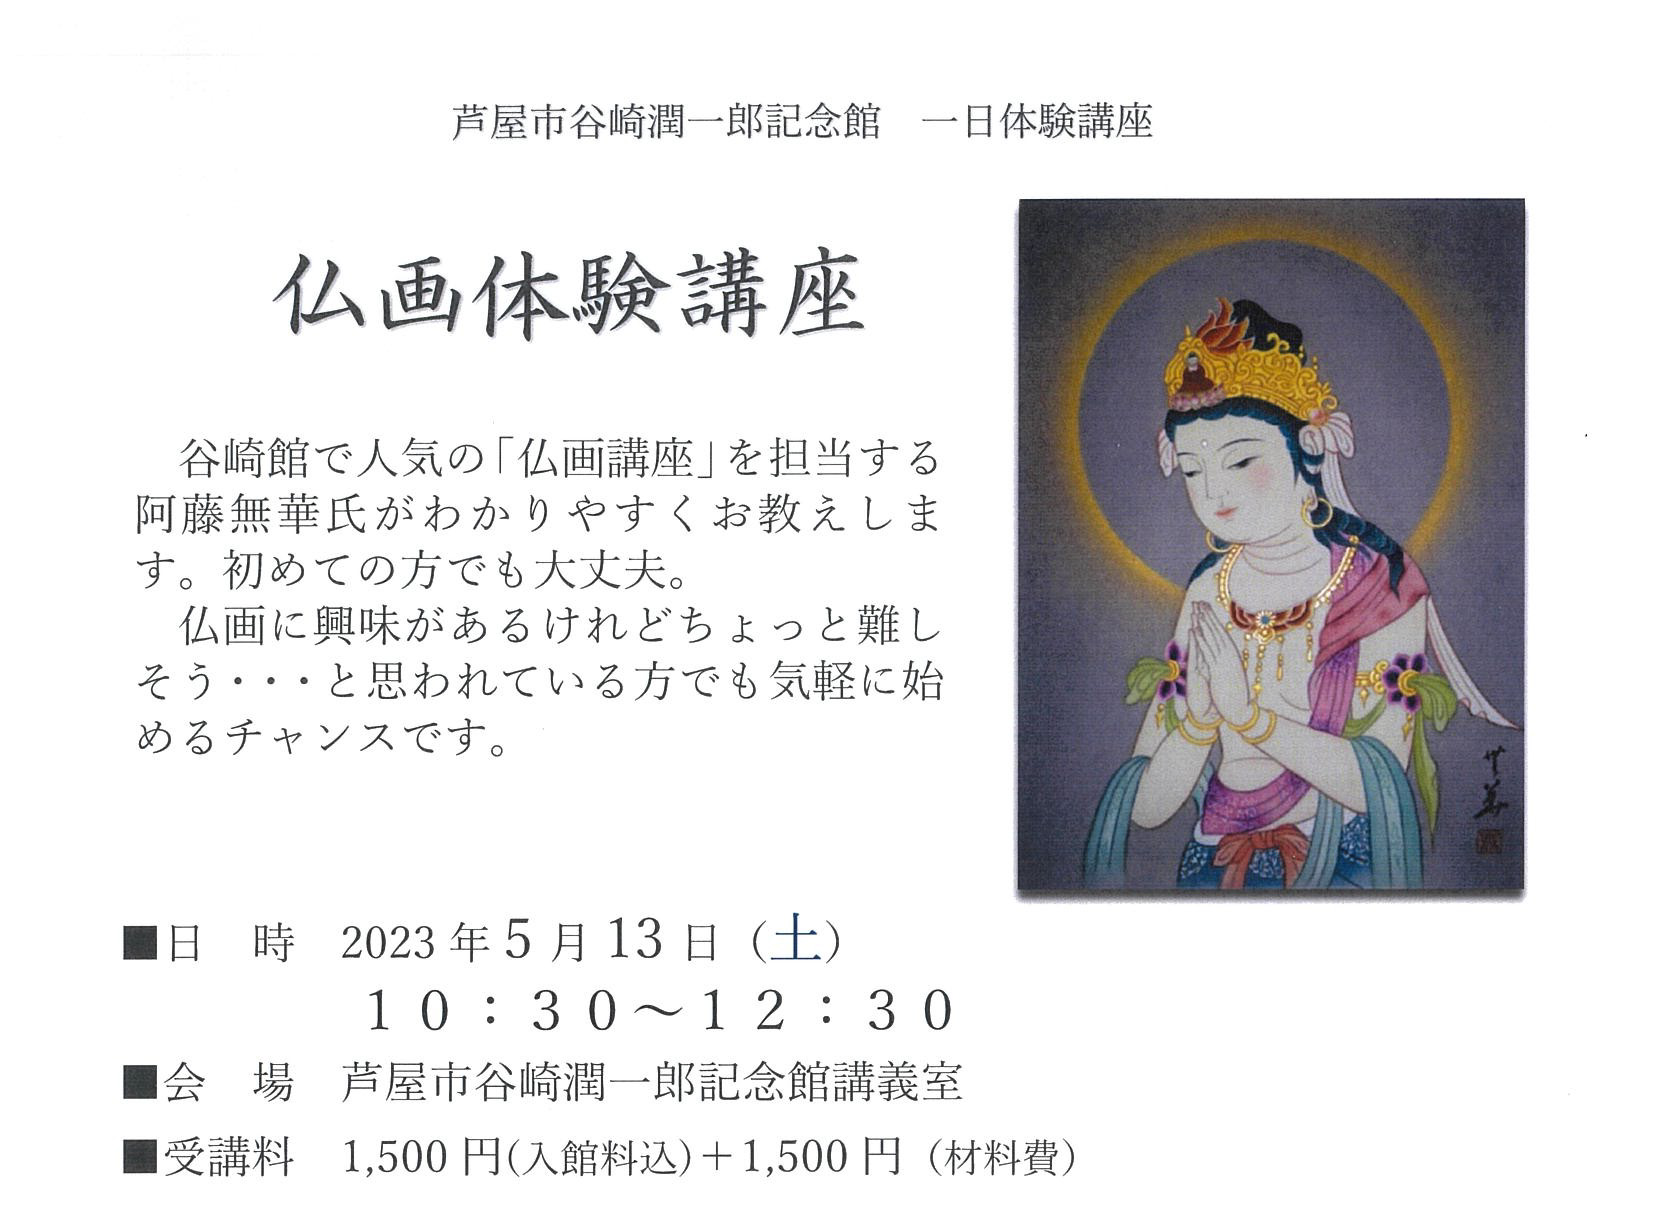 2023年5月13日 芦屋谷崎潤一郎記念館 <br>一日体験講座 仏画体験講座